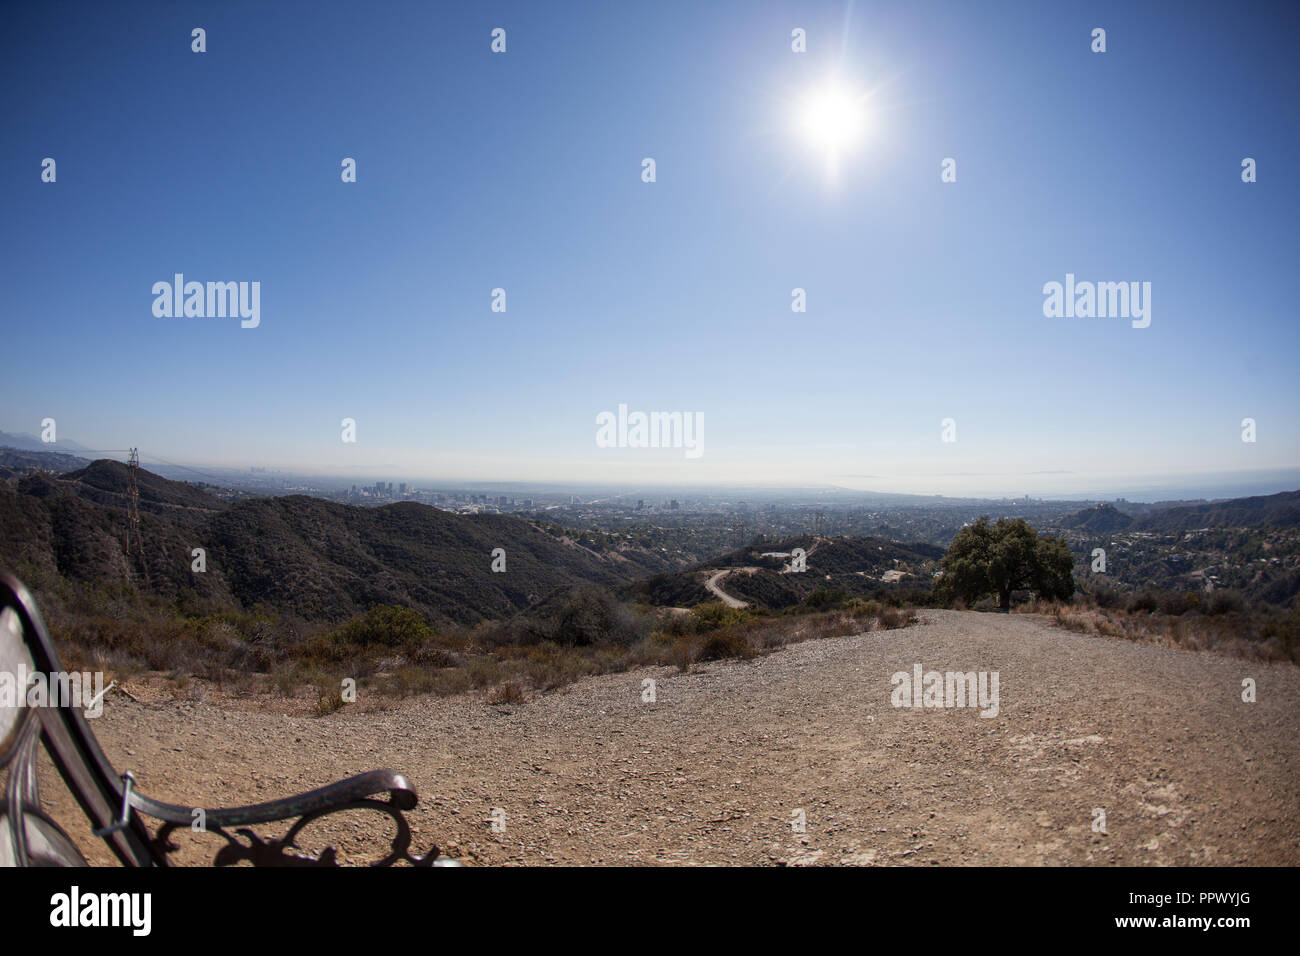 Impresionantes vistas panorámicas de la zona oeste de Los Angeles de Kenter Trail caminata en Brentwood. Con vistas a Santa Monica, Beverly Hills, Hollywood, Culver City con el centro de Los Ángeles en el horizonte. Foto de stock